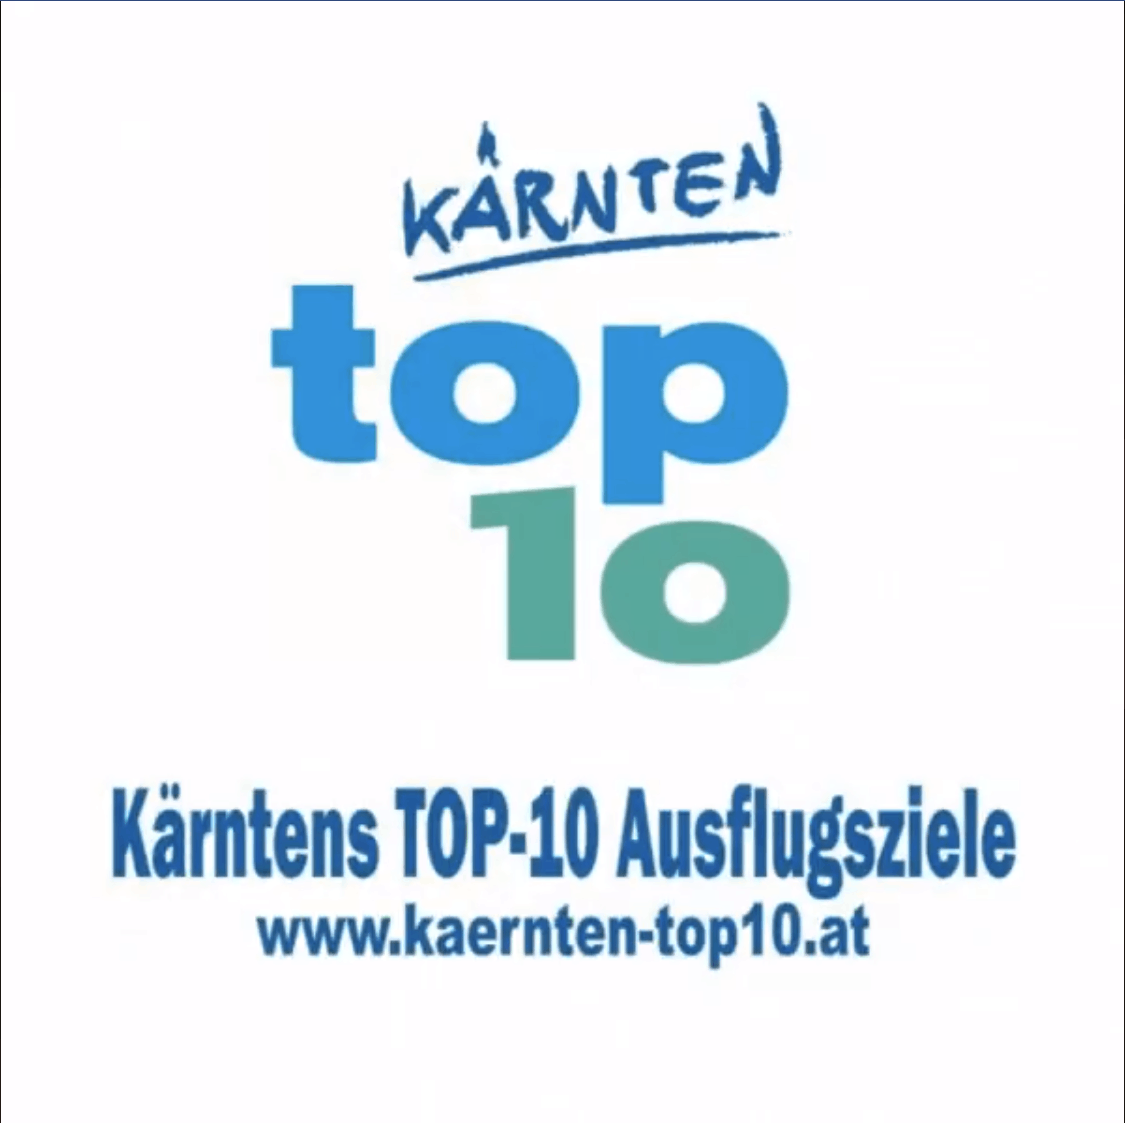 Tierpark Schloss und Labyrinth Rosegg ist eines von Kärntens TOP-10 Ausflugszielen - Bild mit Logo und Webadresse www.kaernten-top10.at